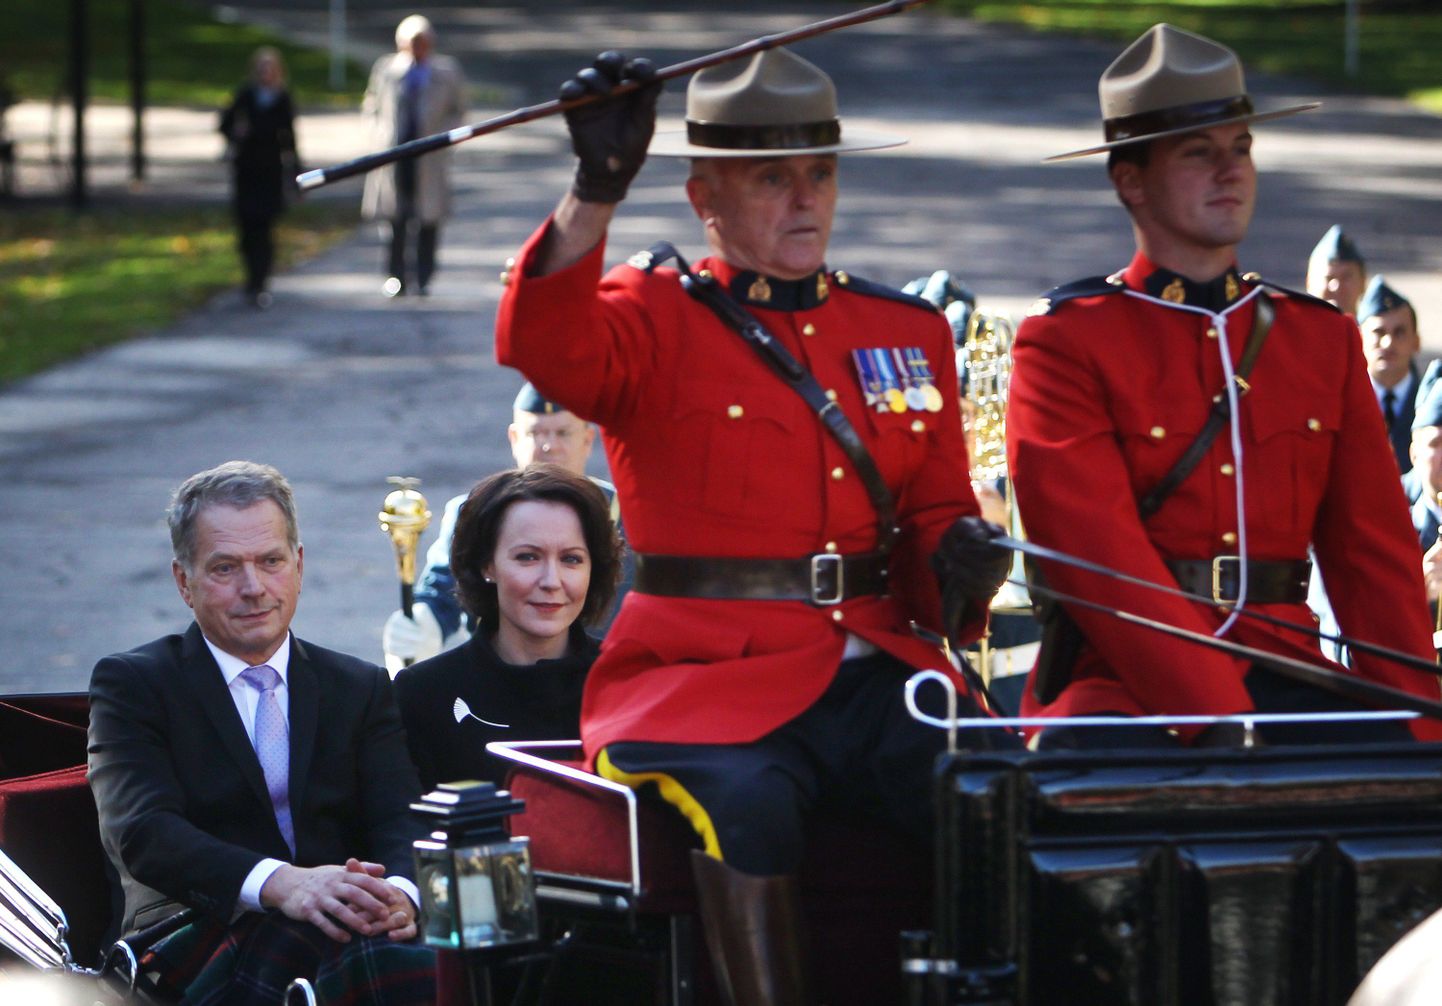 Soome president Sauli Niinistö koos abikaasa Jenni Haukioga 9. oktoobril Ottawas.